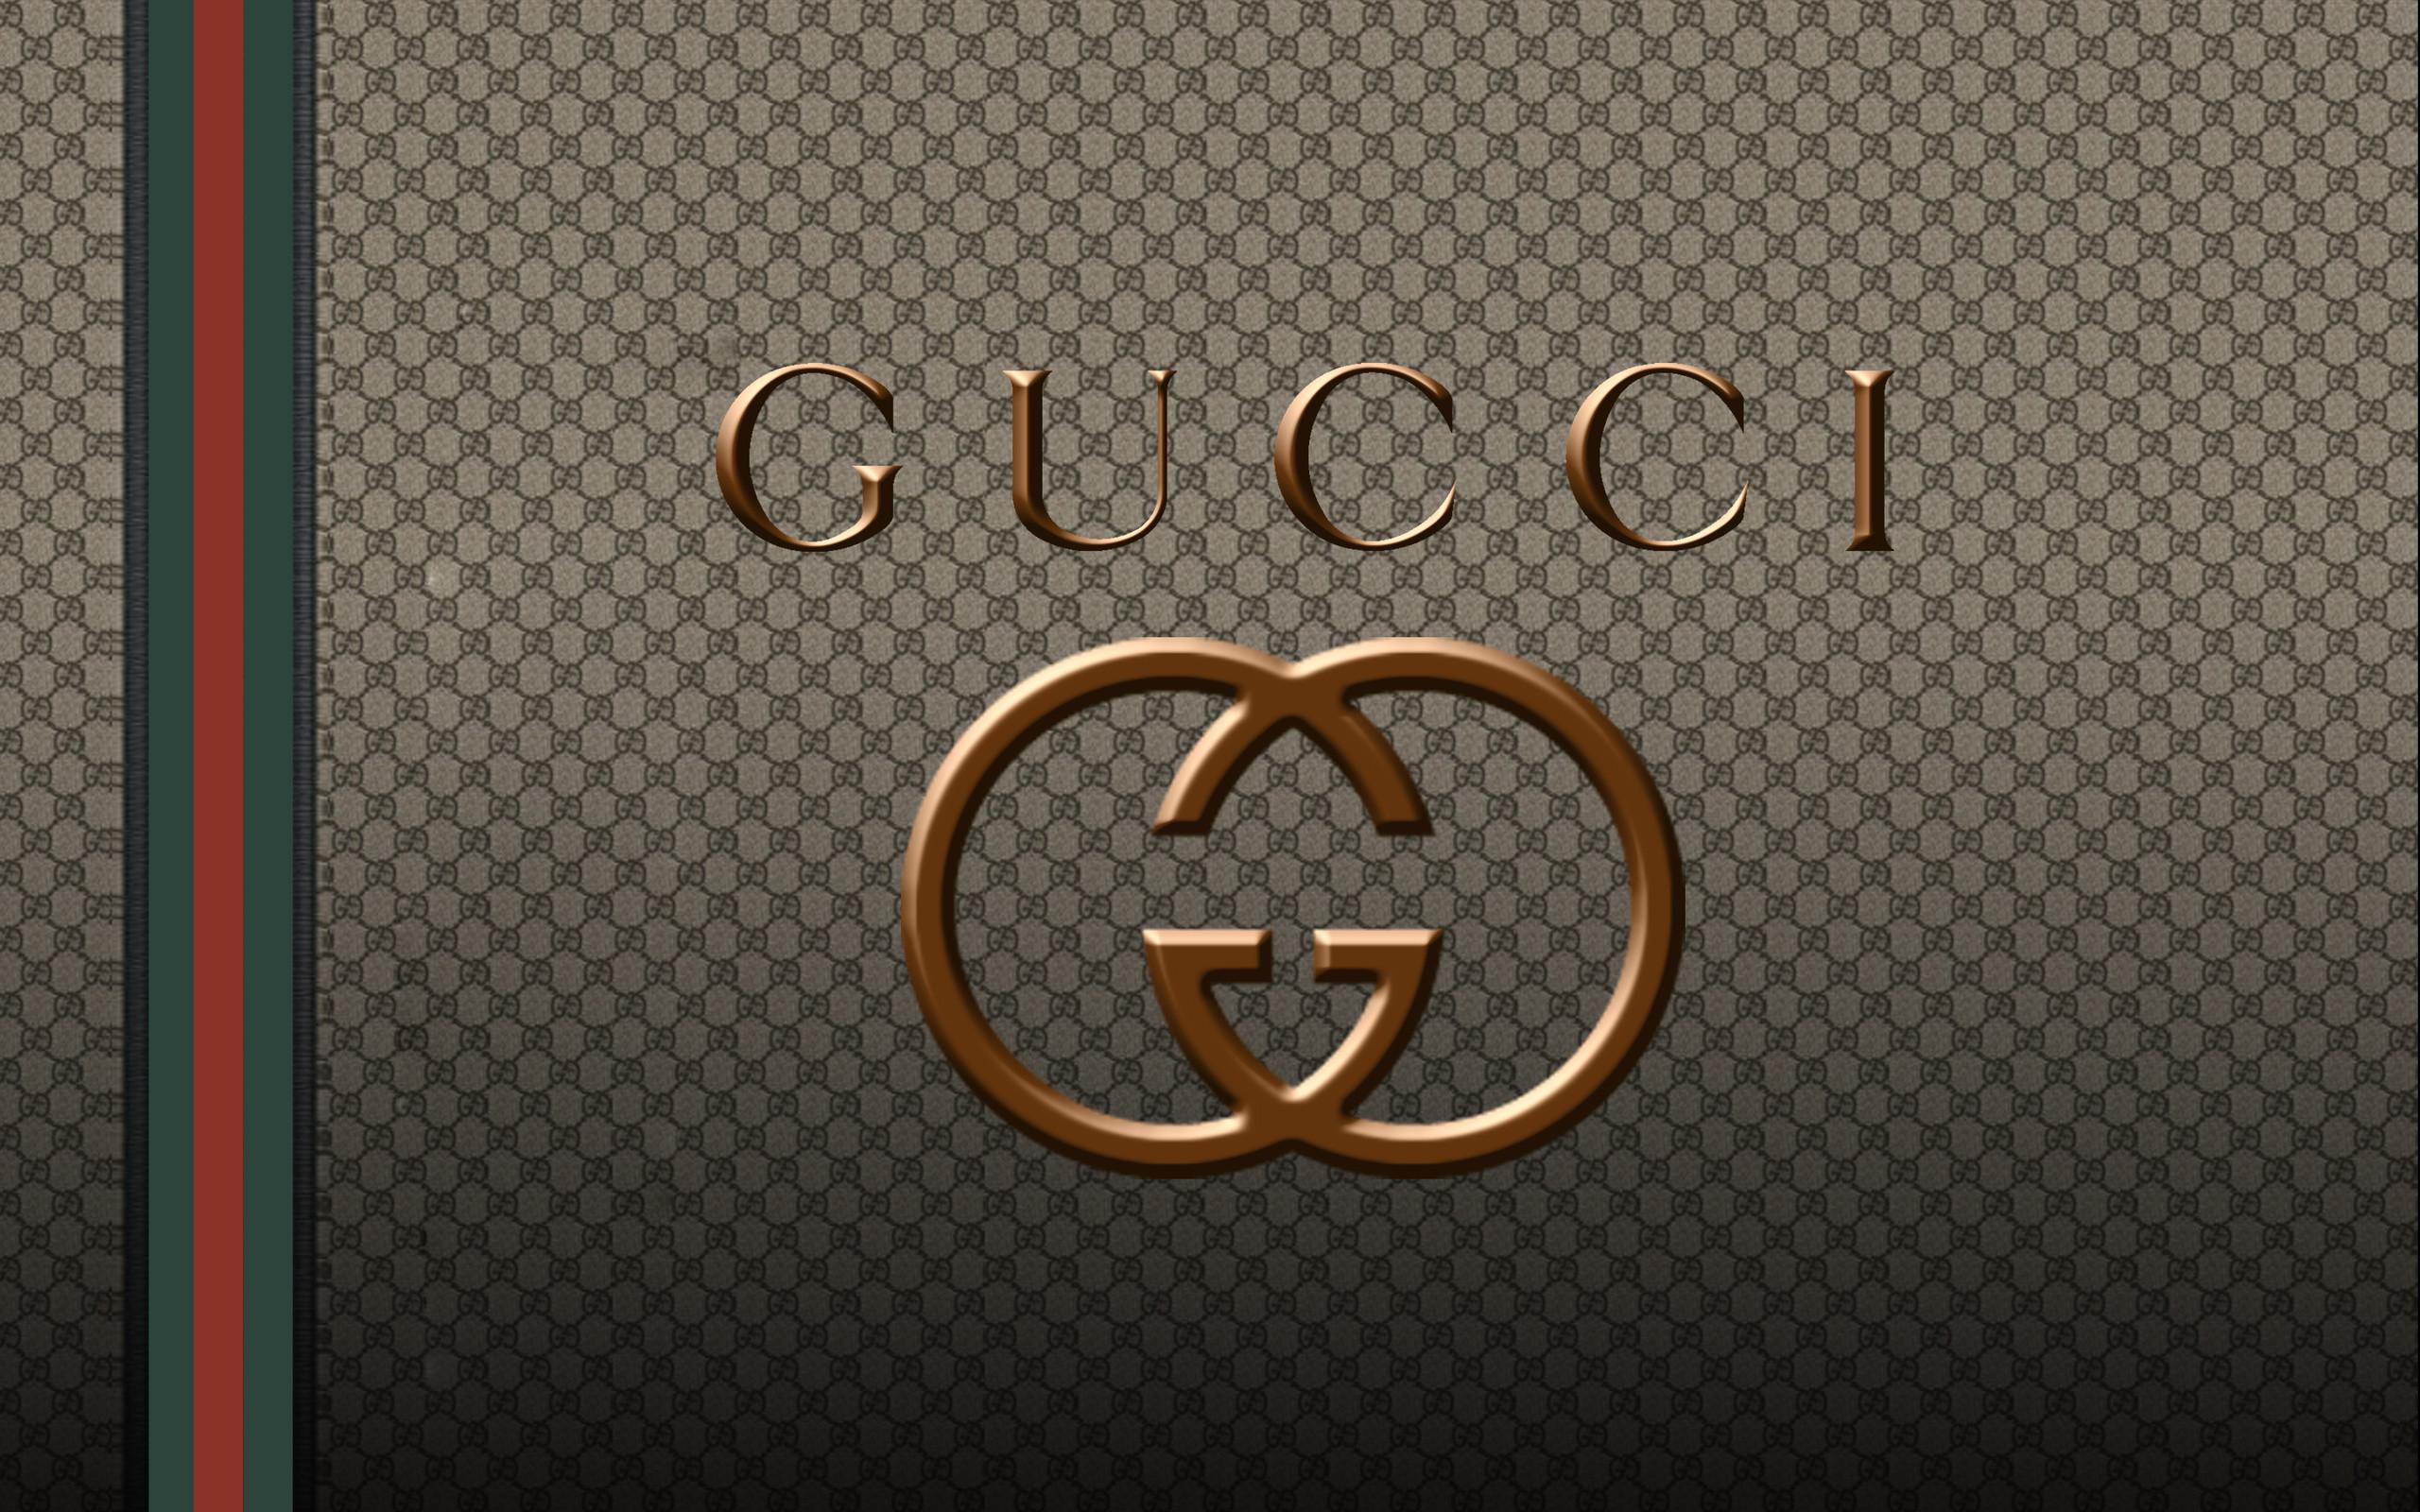 Gucci Computer Wallpapers Wallpaper Cave